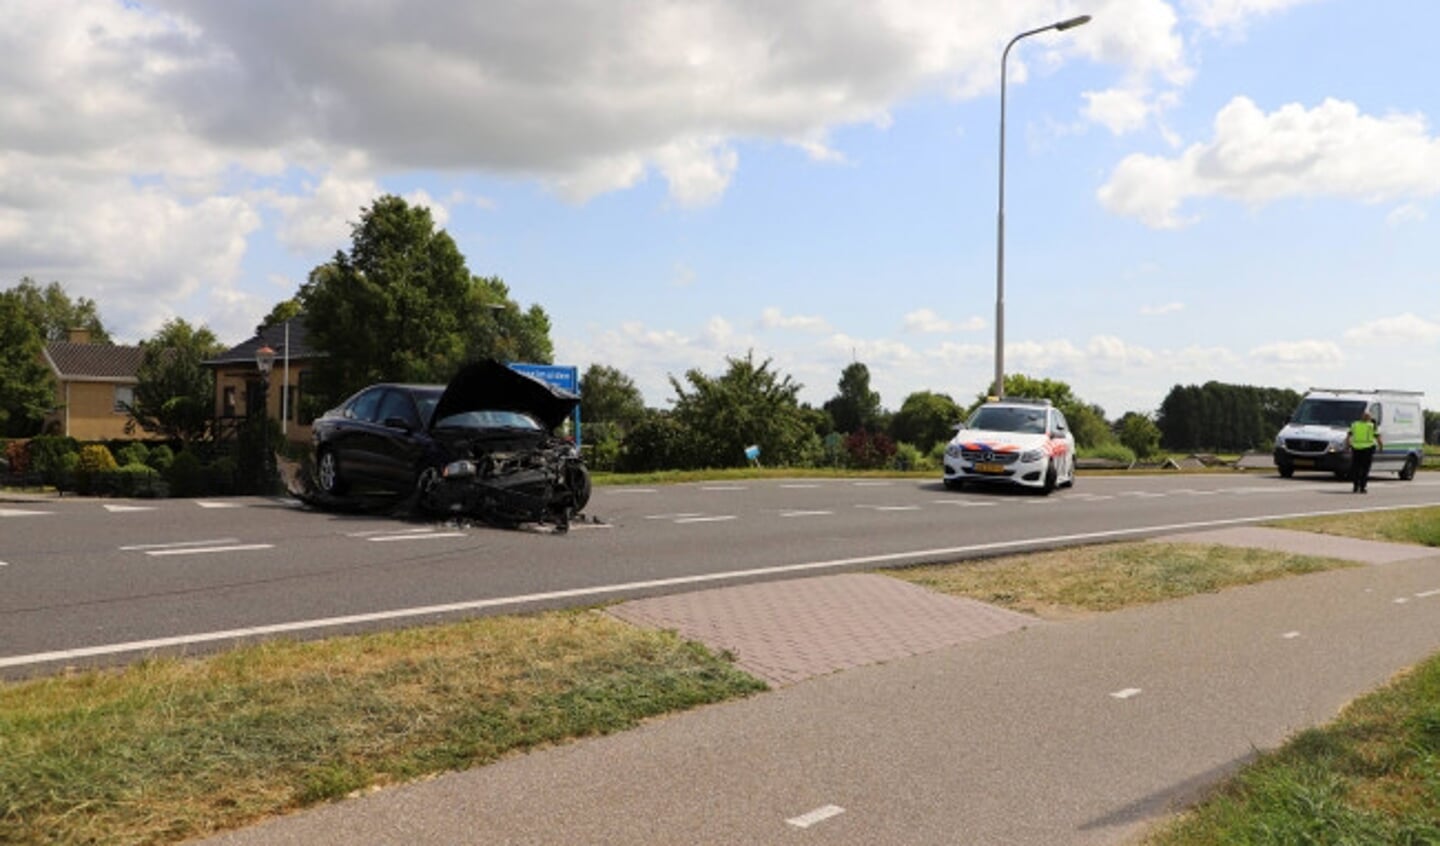  IJsselmuiden - Op de kruising van de Grafhorsterweg en de Dorpsweg in IJsselmuiden heeft dinsdagmiddag 9 juli een aanrijding tussen twee voertuigen plaatsgevonden. Bij het ongeval zijn geen personen gewond geraakt wel is de schade aan de voertuigen fors. 